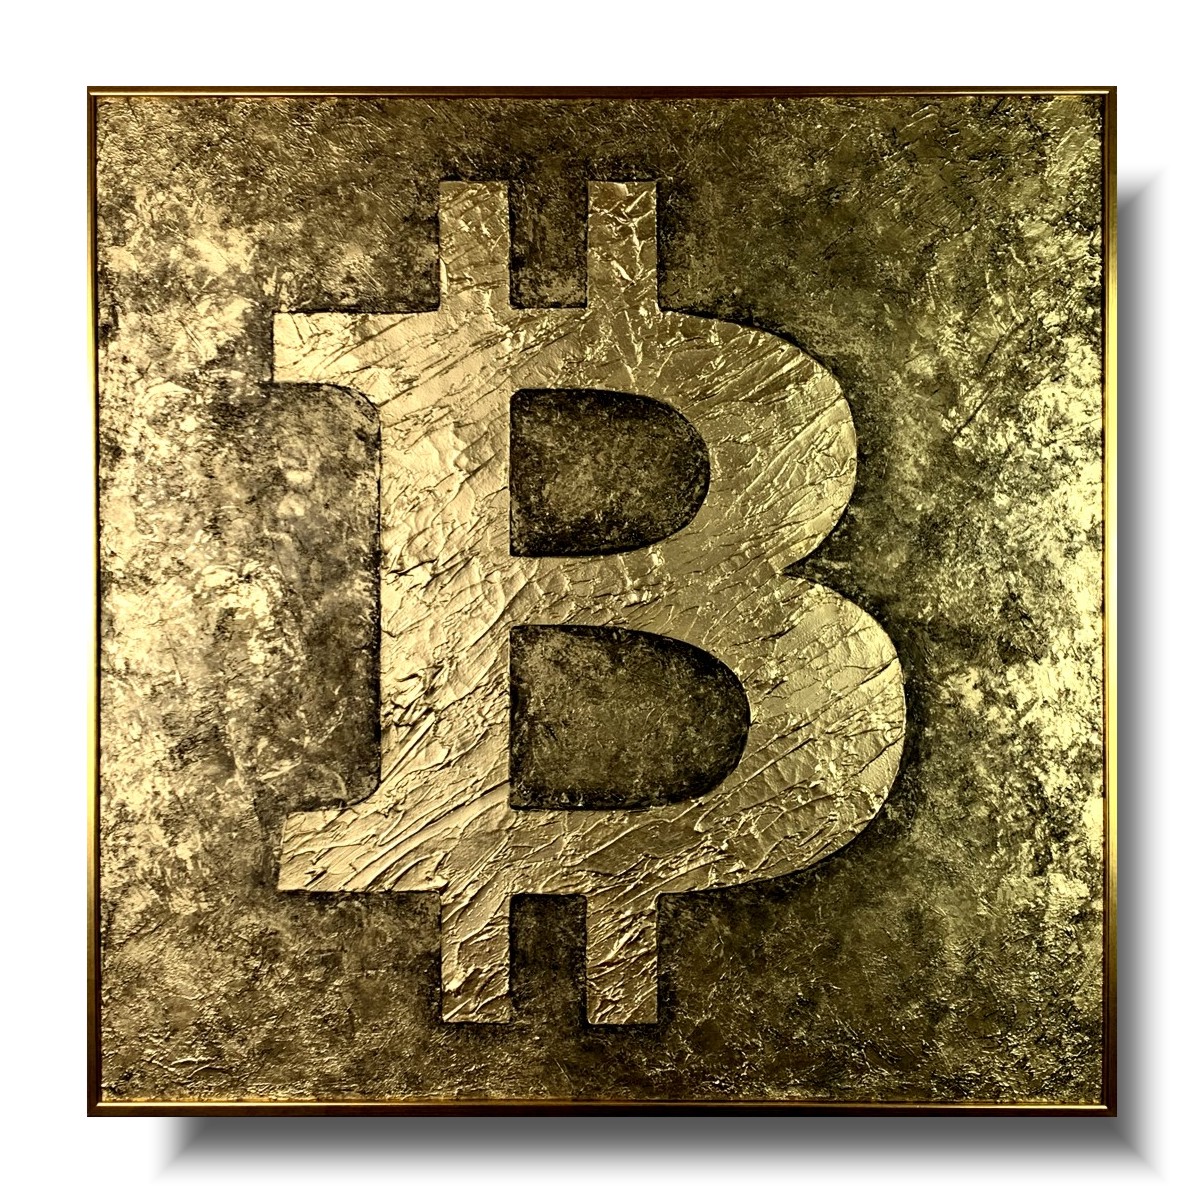 obraz złoty, obraz bitcoin, obraz w złotej ramie, obraz kryptowaluty, obrazy do salonu sprzedaży, bitcoin obraz